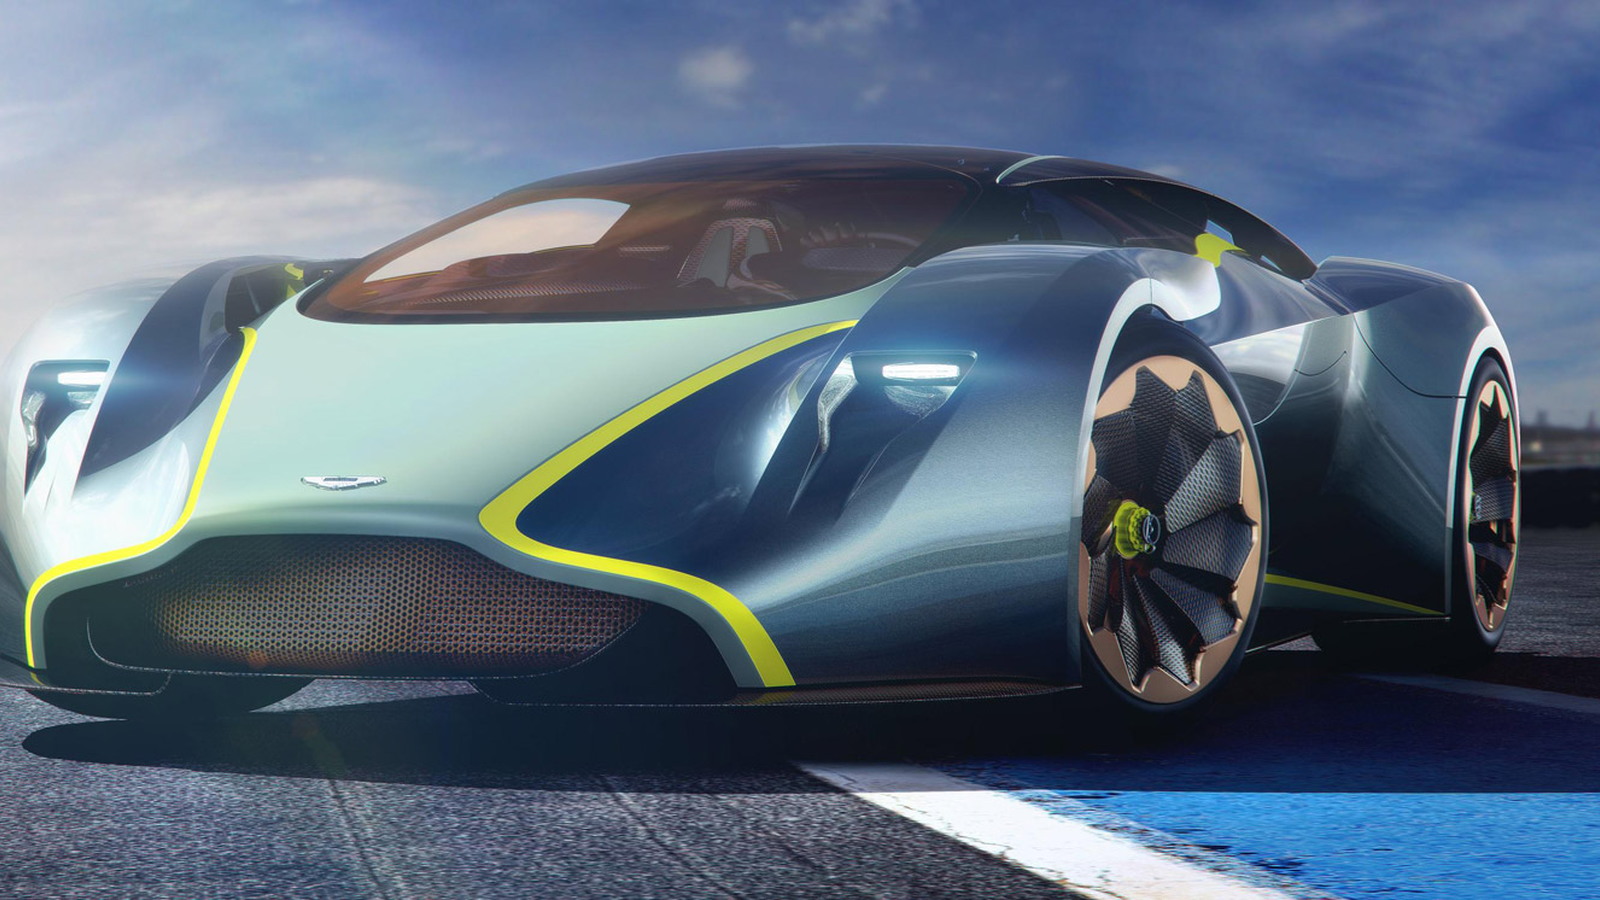 Aston Martin DP-100 Vision Gran Turismo concept